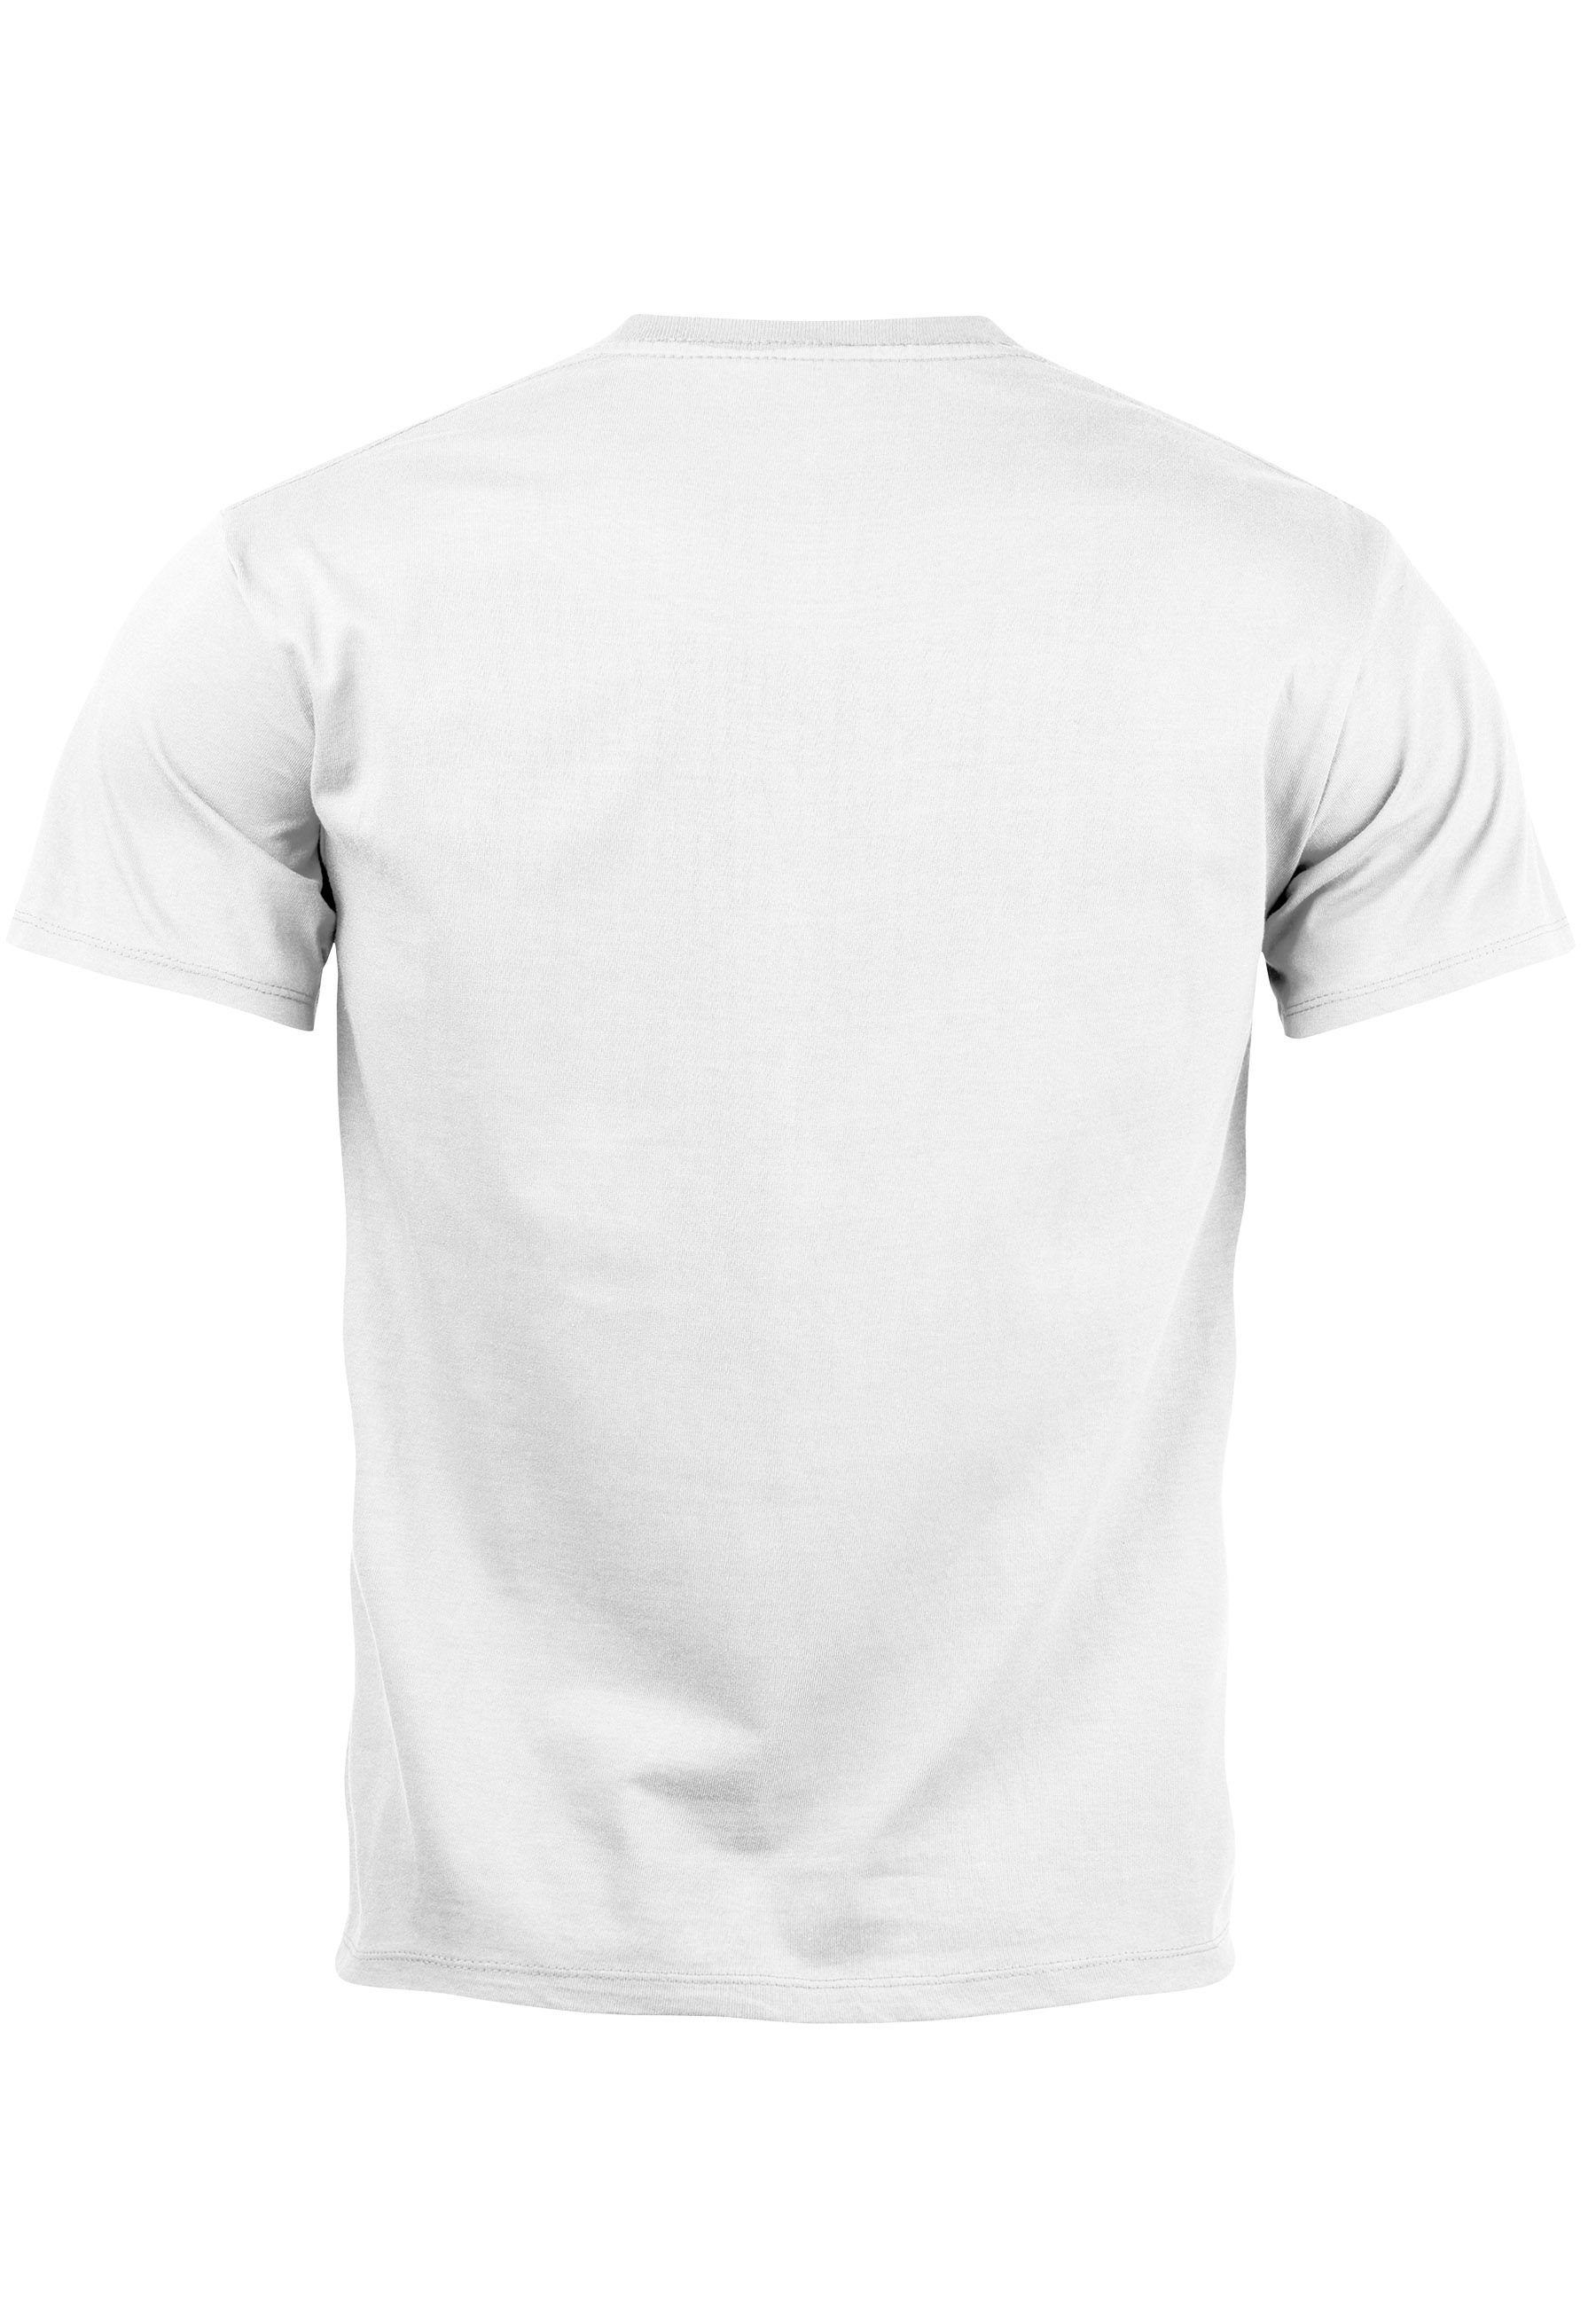 Print-Shirt T mit Herren T-Shirt weiß Print Streetstyle mit Neverless Techwear Smile Print Fashion Aufdruck